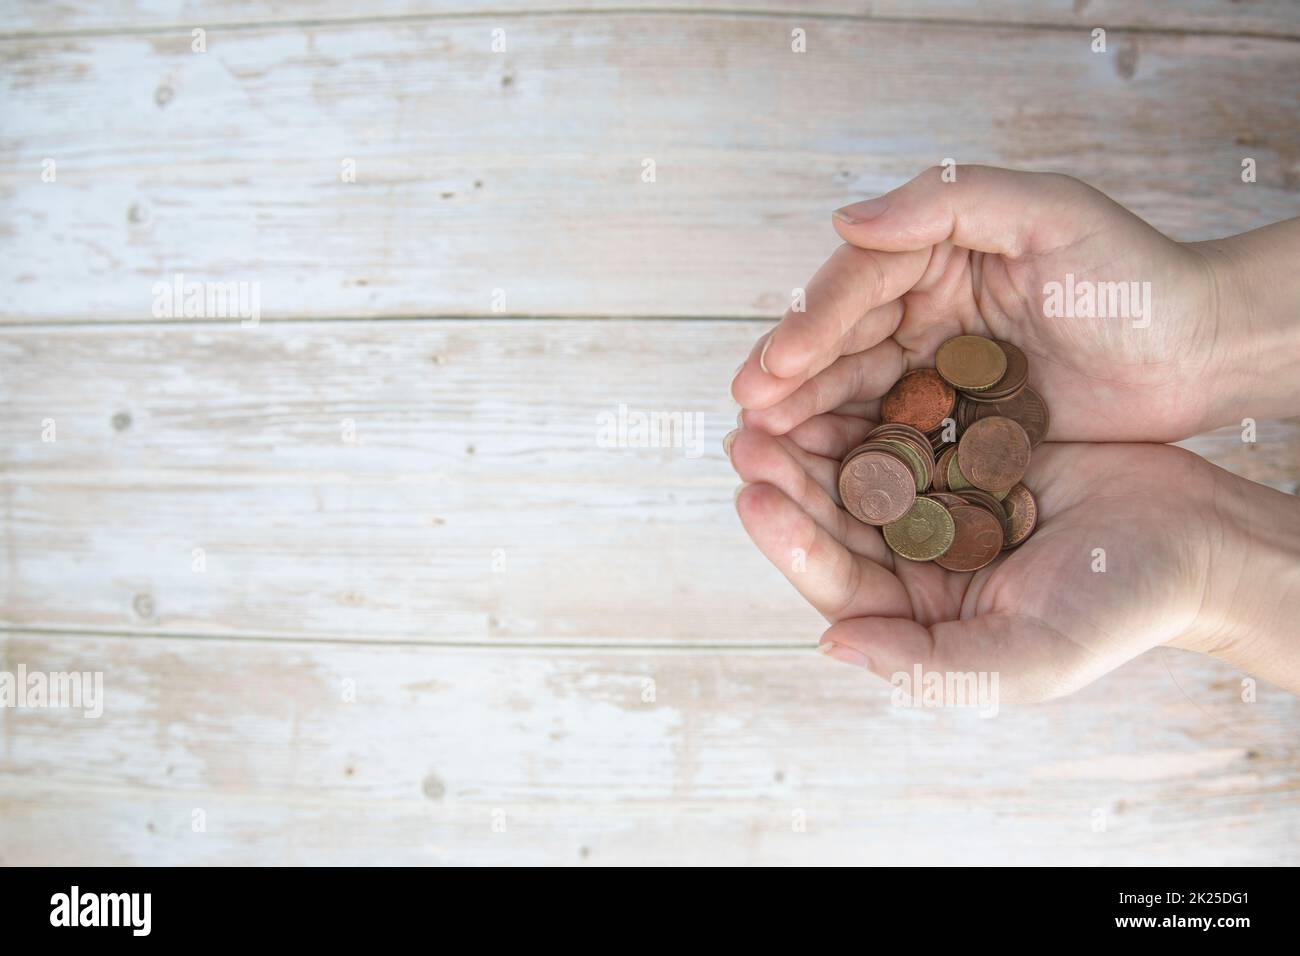 Hände, die einen Haufen Euro-Münzen in der Hand halten, auf Holzhintergrund. Spenden, Sparen, Spendenaktionen, Familienfinanzplan, Finanzkrisenkonzept. Draufsicht. Speicherplatz kopieren Stockfoto